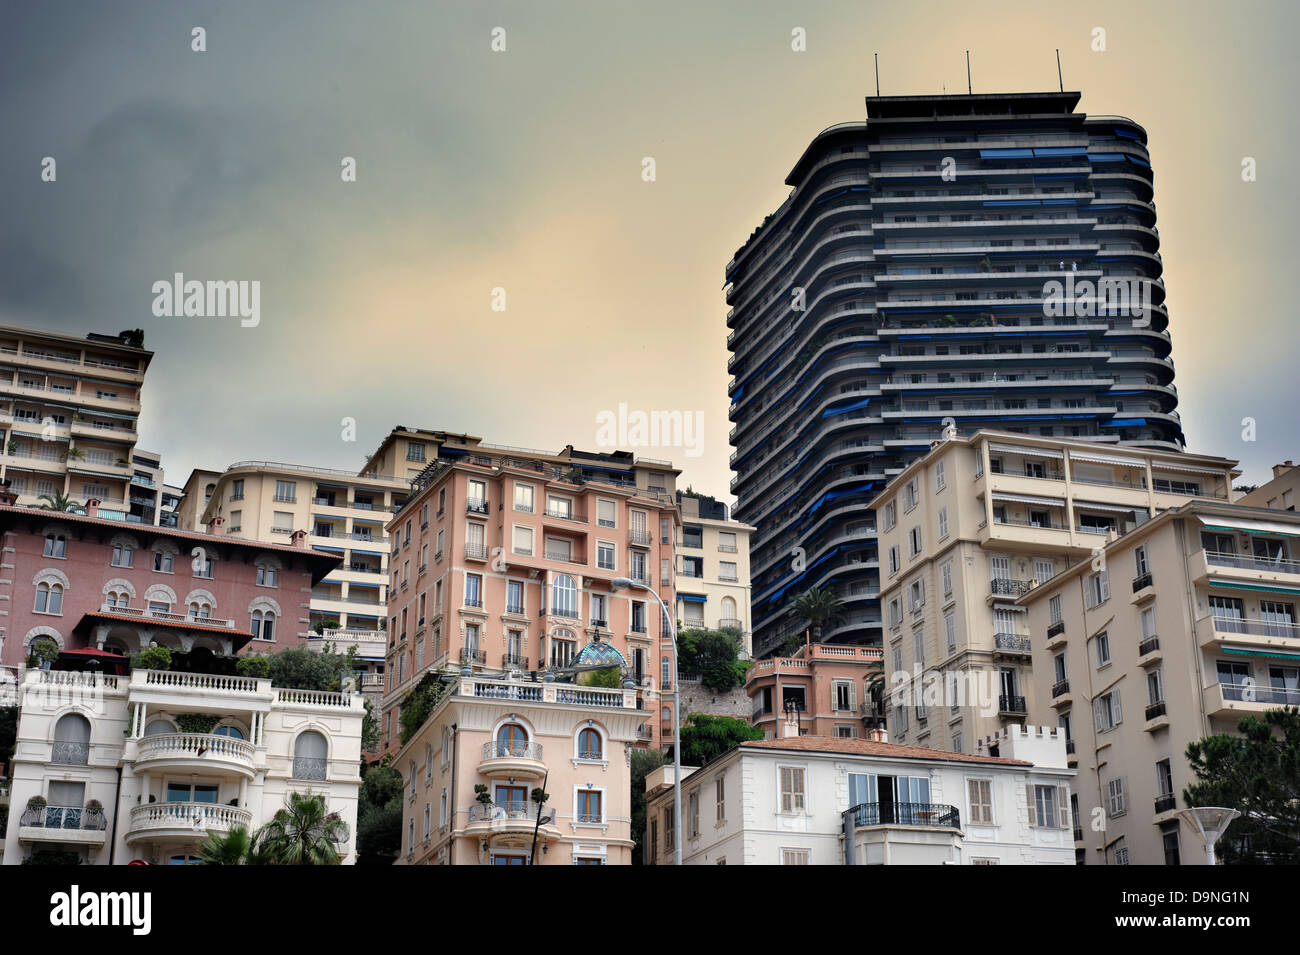 Fotografia che mostra alcune delle tipiche architetture nel La Condamine quartiere di Monaco, vicino a Monte Carlo. Bu residenziale Foto Stock